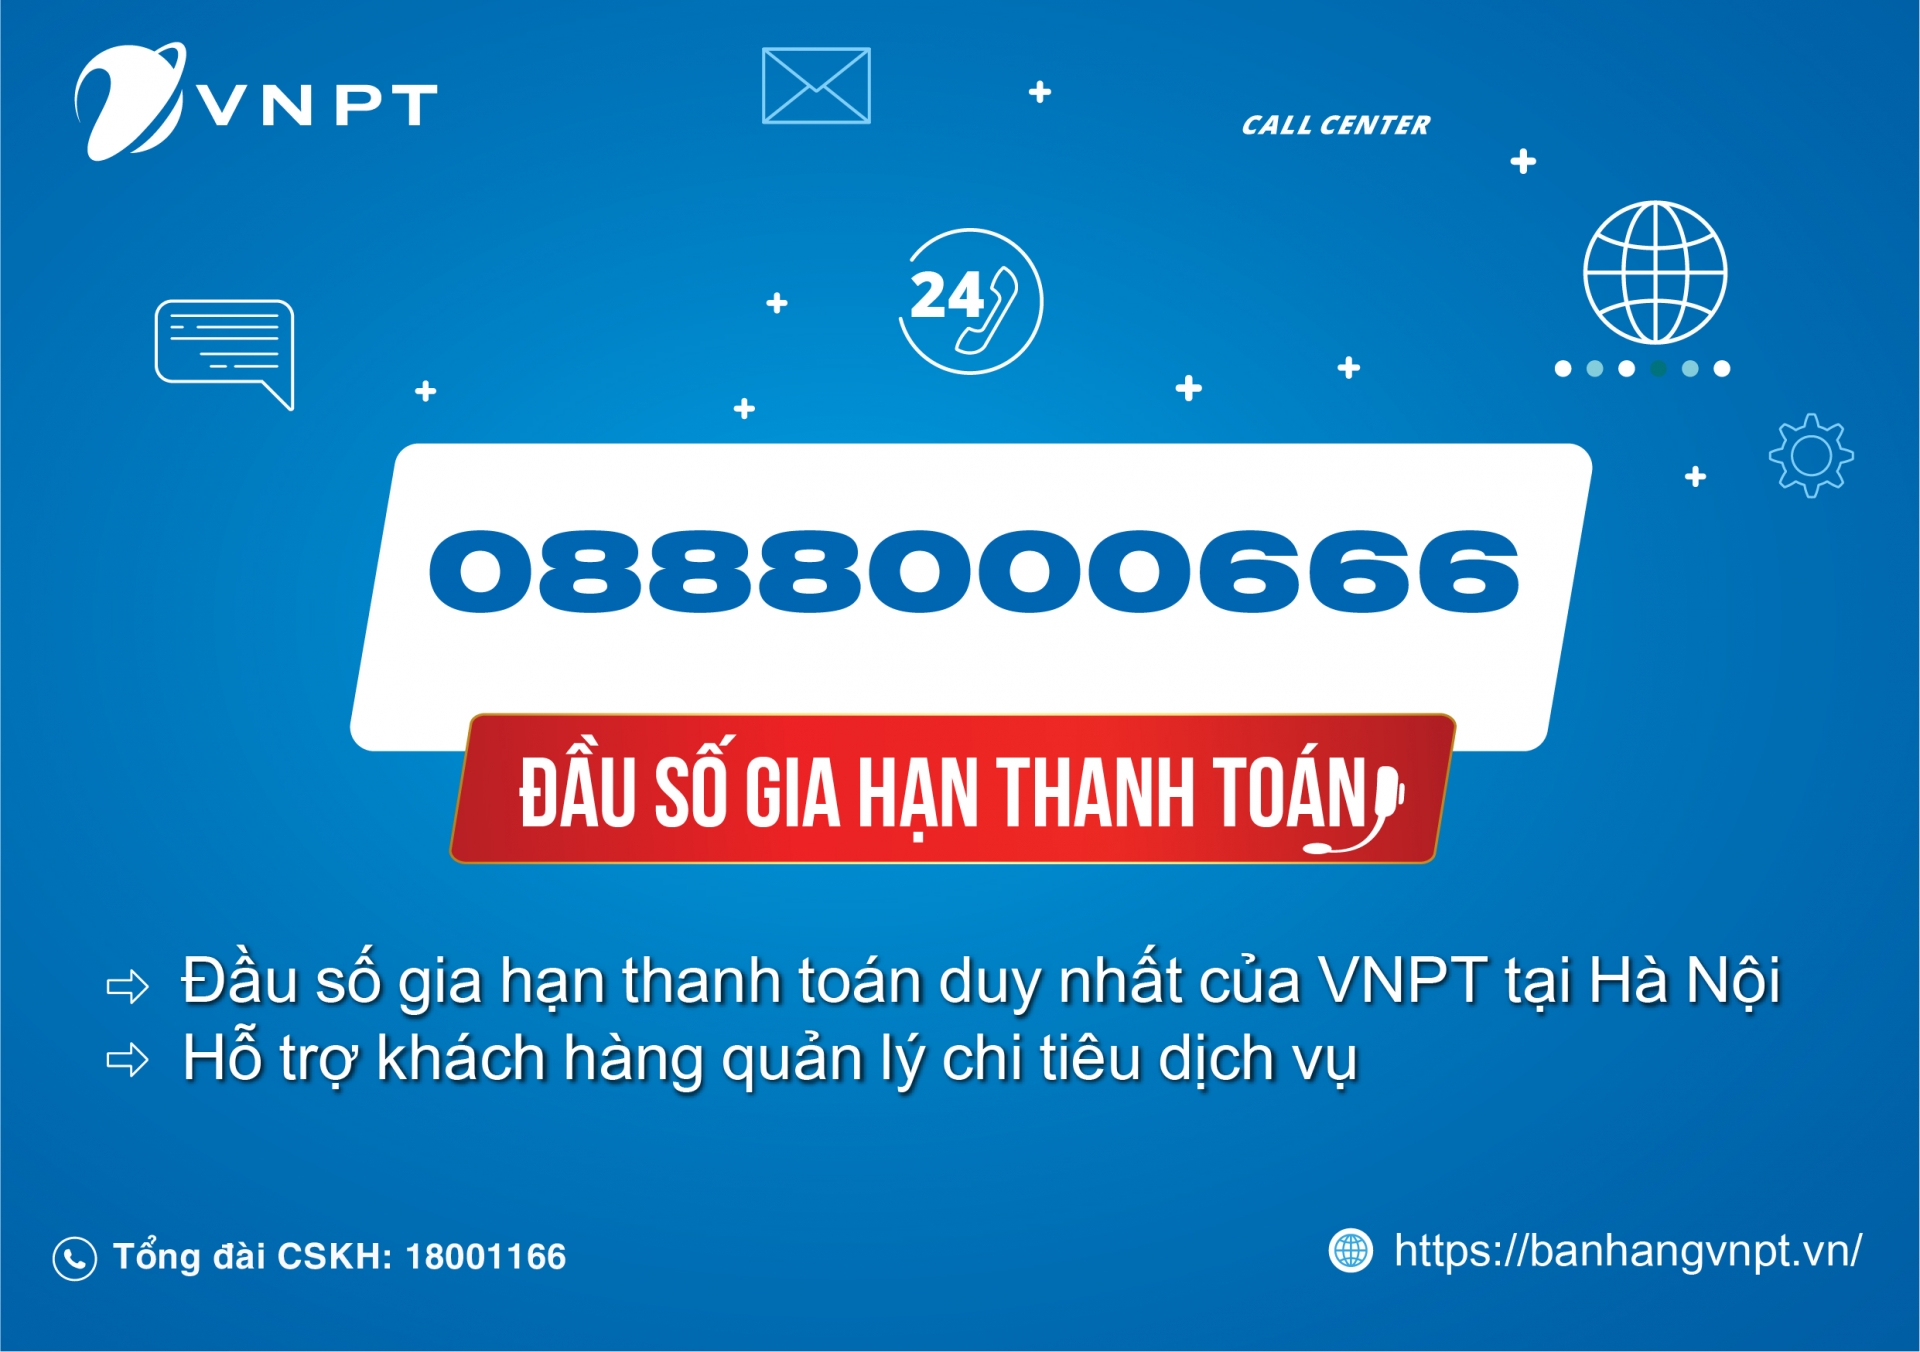 0888000666 - Đầu số gia hạn thanh toán duy nhất của VNPT Hà Nội